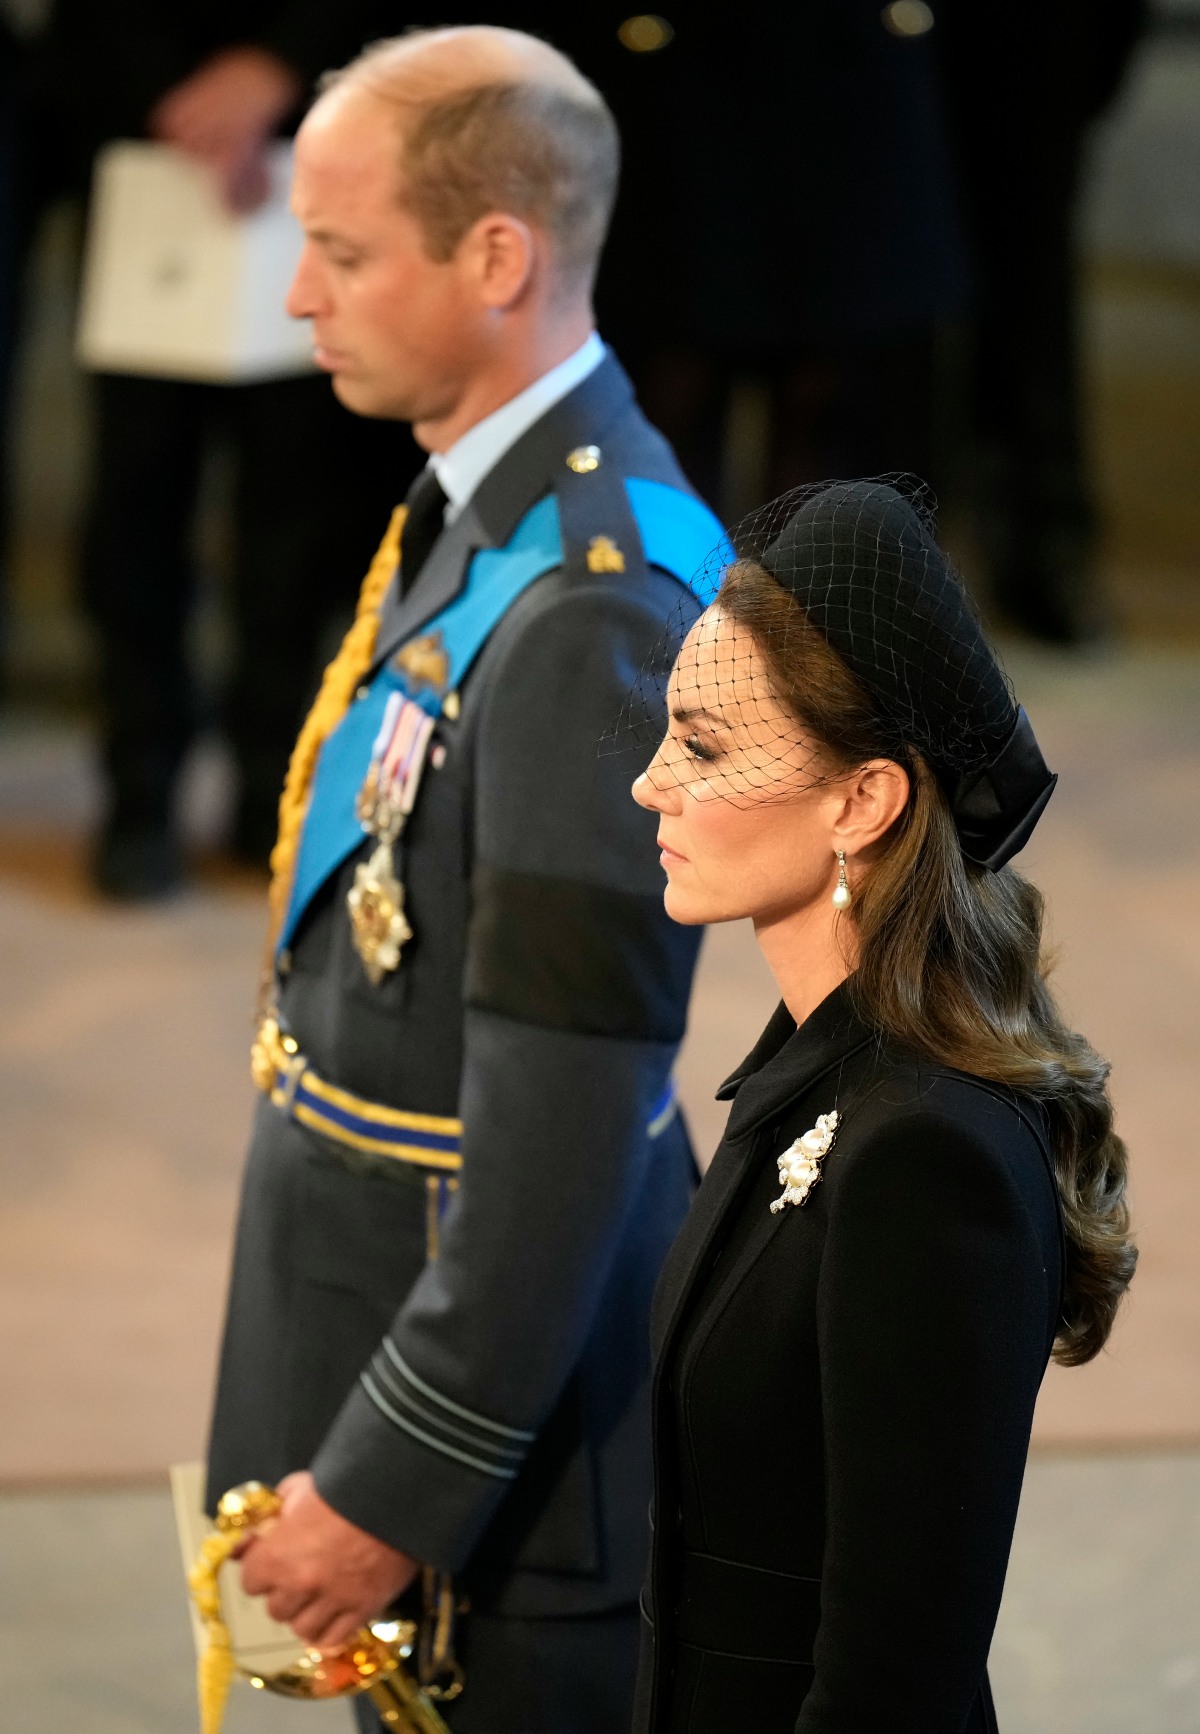 kaltak | Galler Prensesi, QEII'nin töreninde Catherine Walker, inciler ve elmaslar taktı